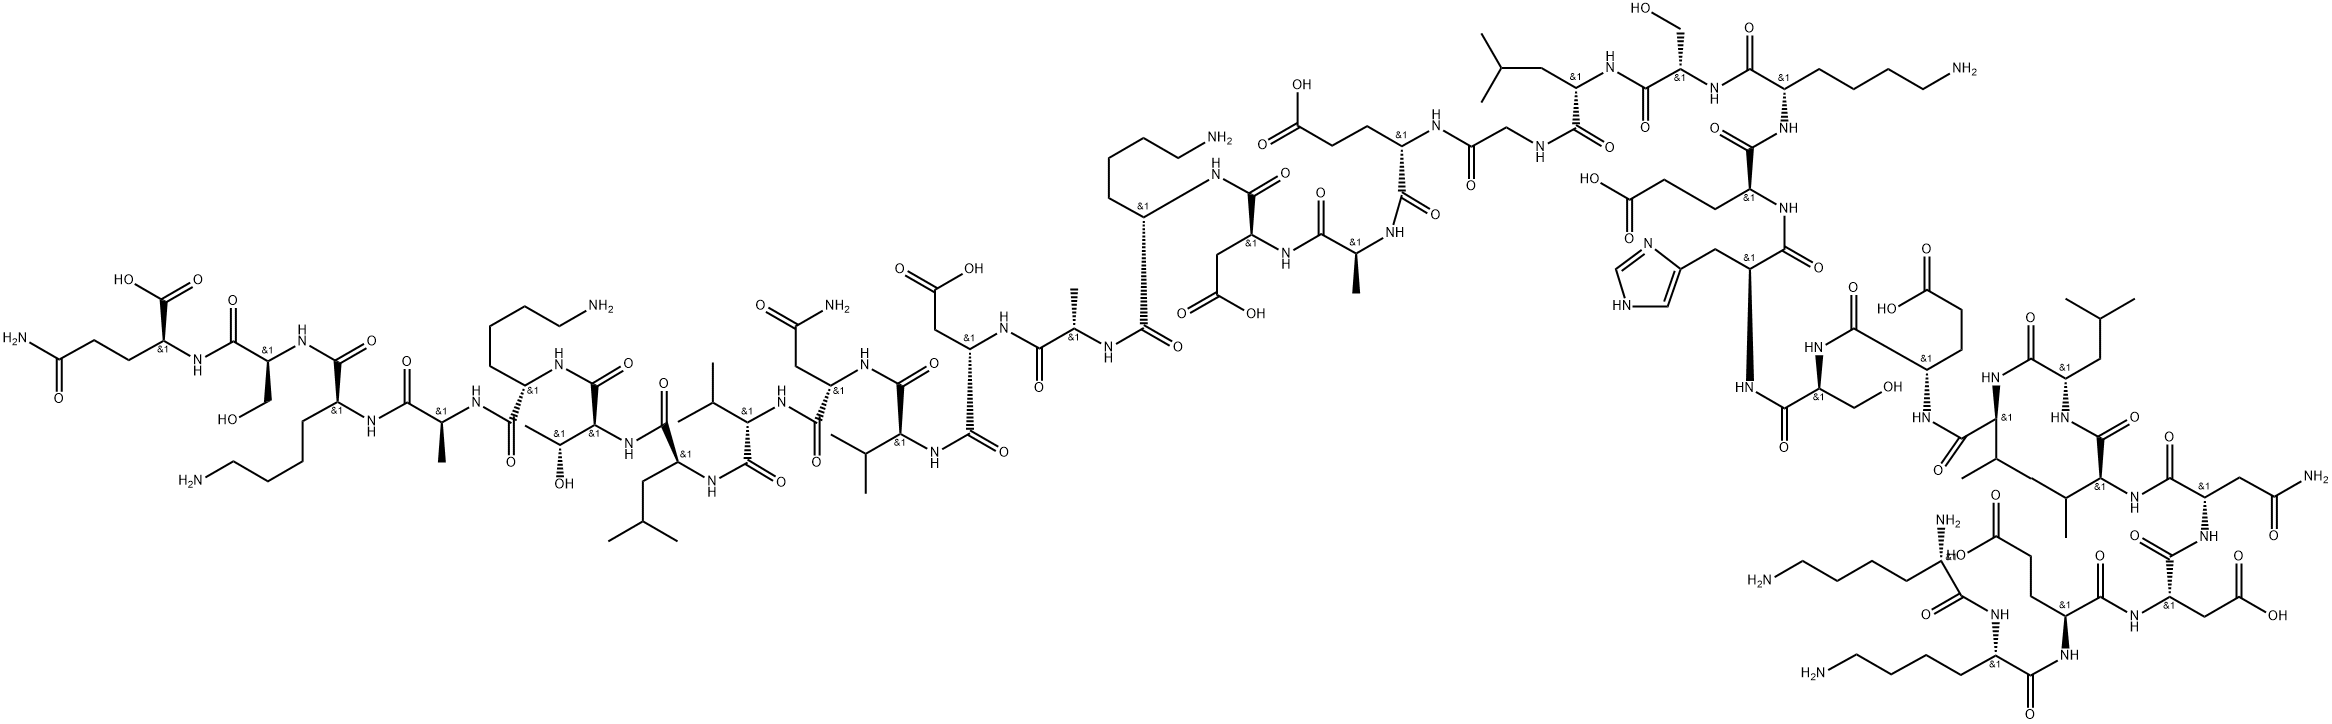 Полипептид рисунок. Ц пептид. Гексасульфоната проинсулина. Инсулин строение молекулы.